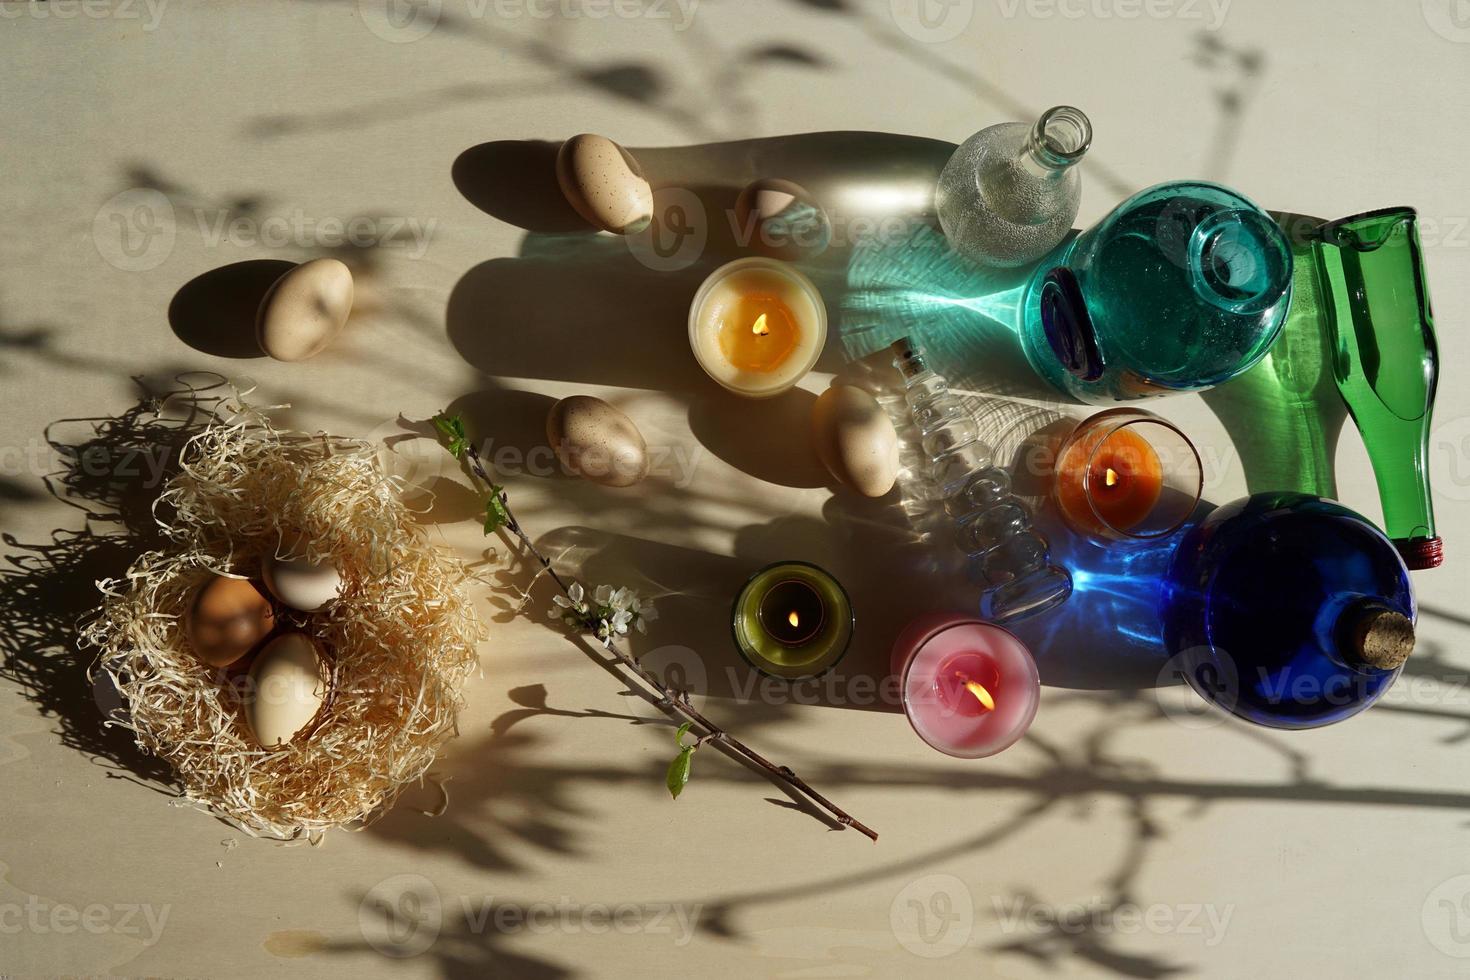 påskägg i halmboet och dekorativa färgglada glas med vatten på det gulvita bordet. foto